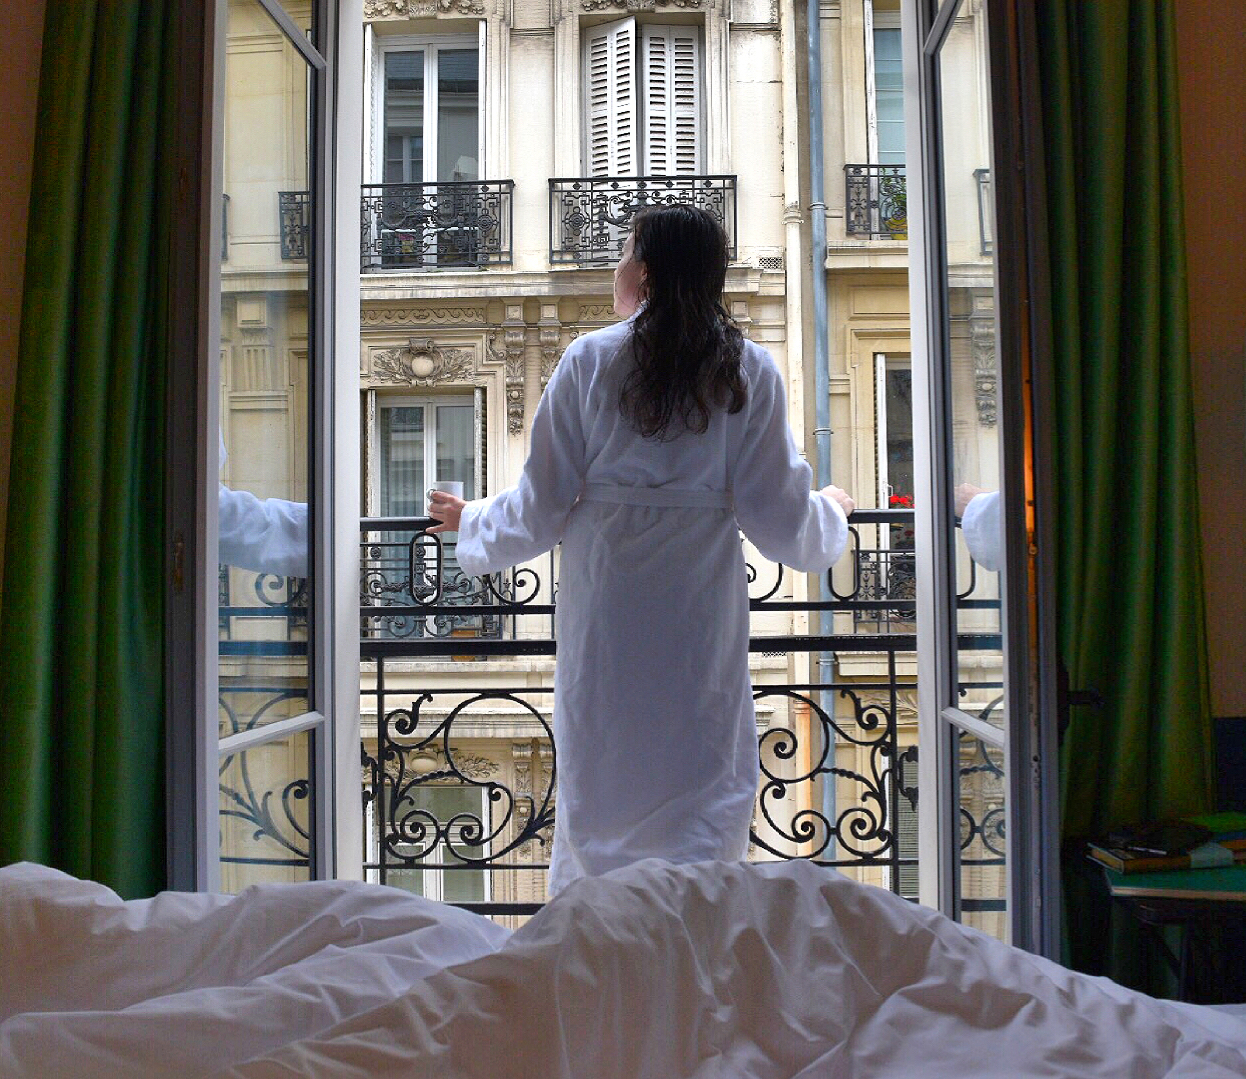 hotel adele et jules in paris